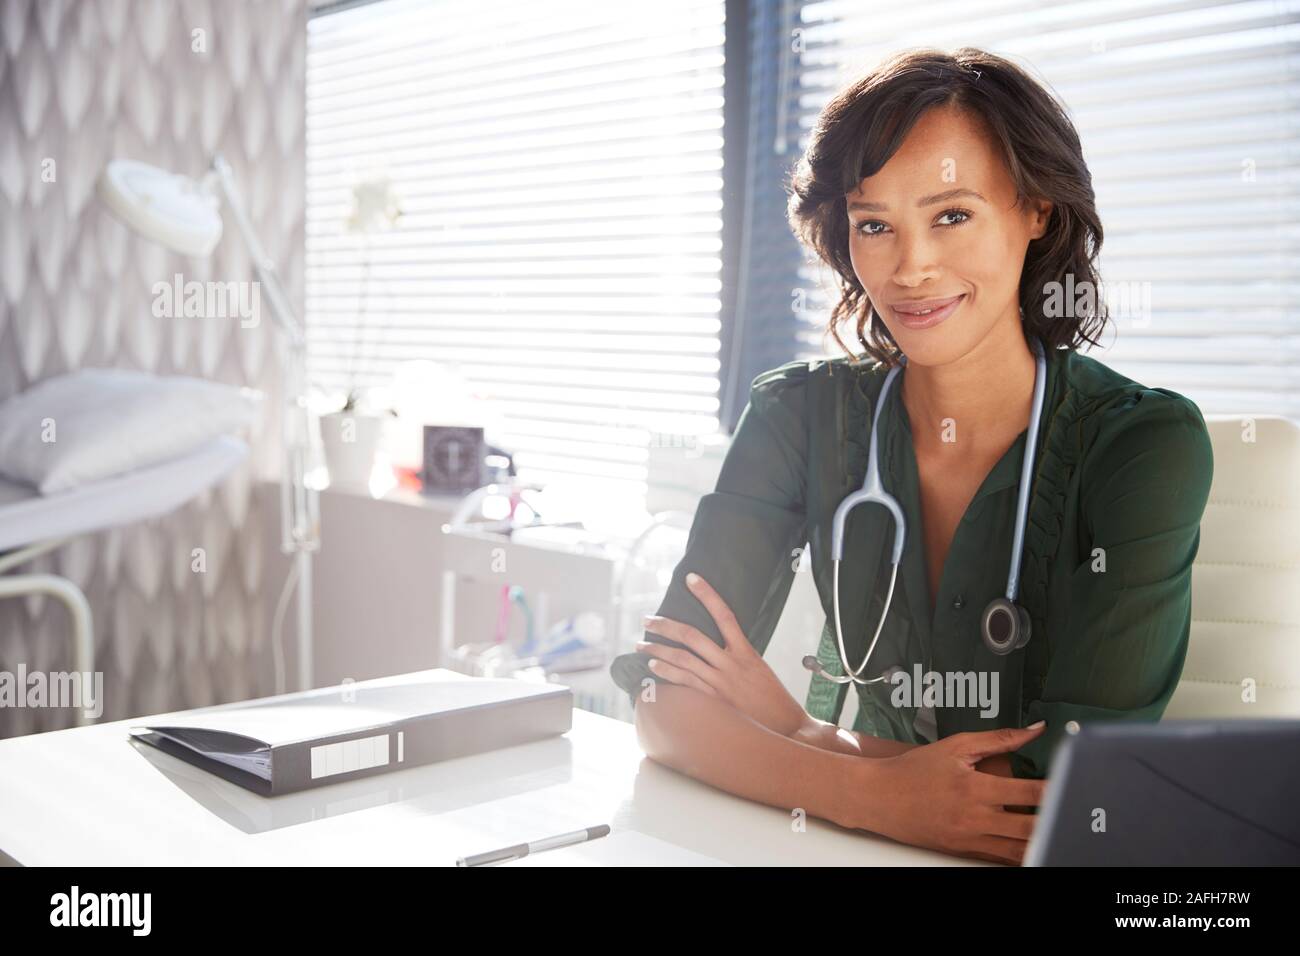 Retrato de mujer sonriente doctor con estetoscopio sentado detrás de escritorio de oficina Foto de stock